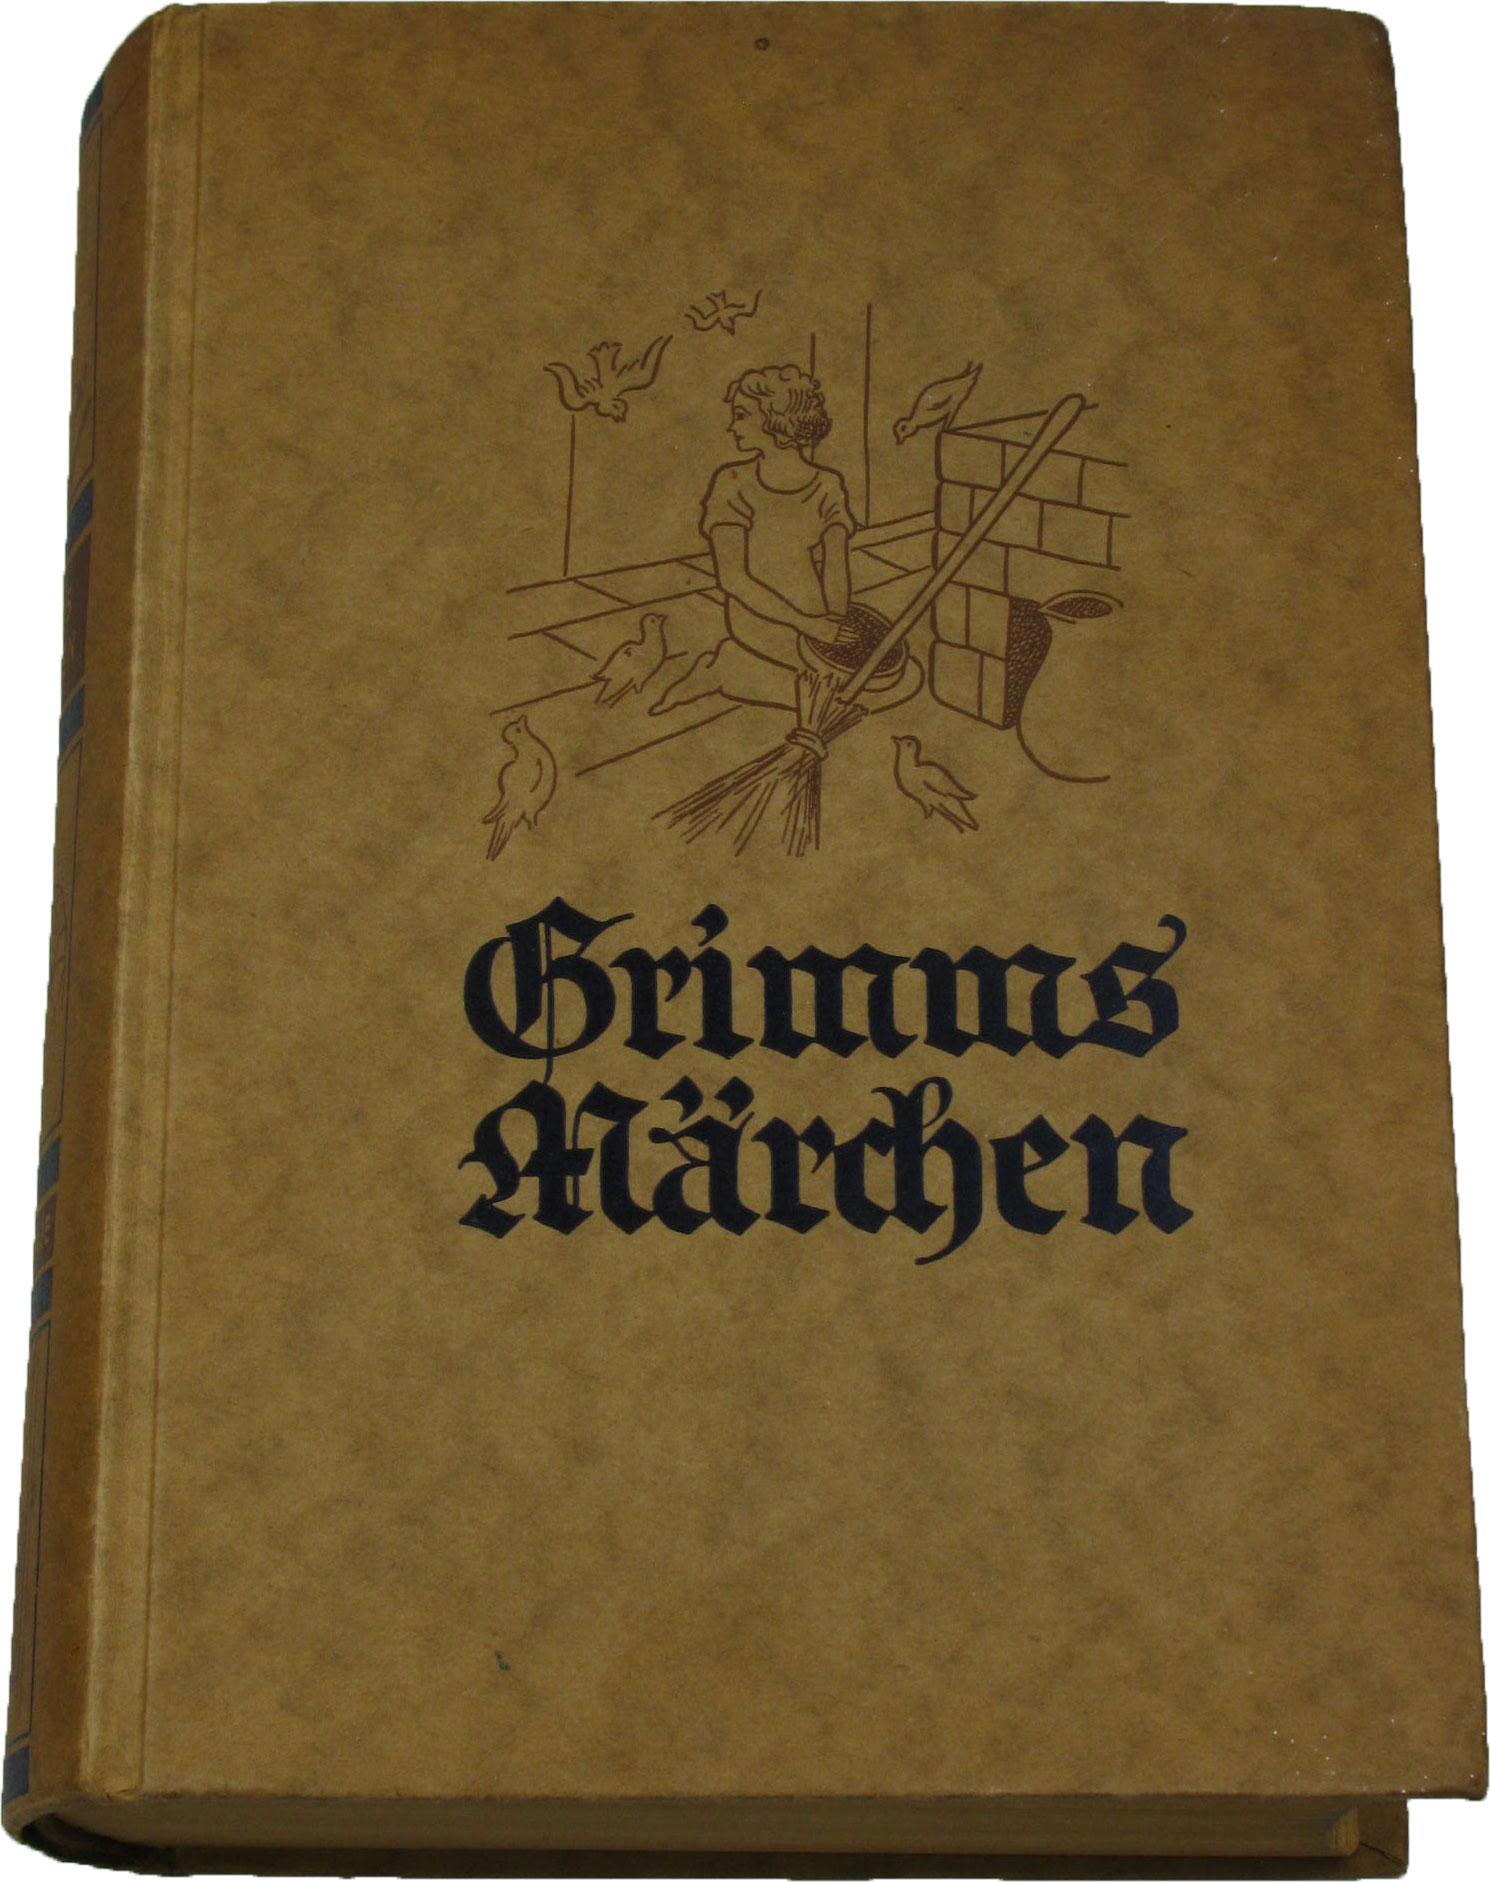 Gebrüder Grimm:  Kinder- und Hausmärchen der Brüder Grimm 